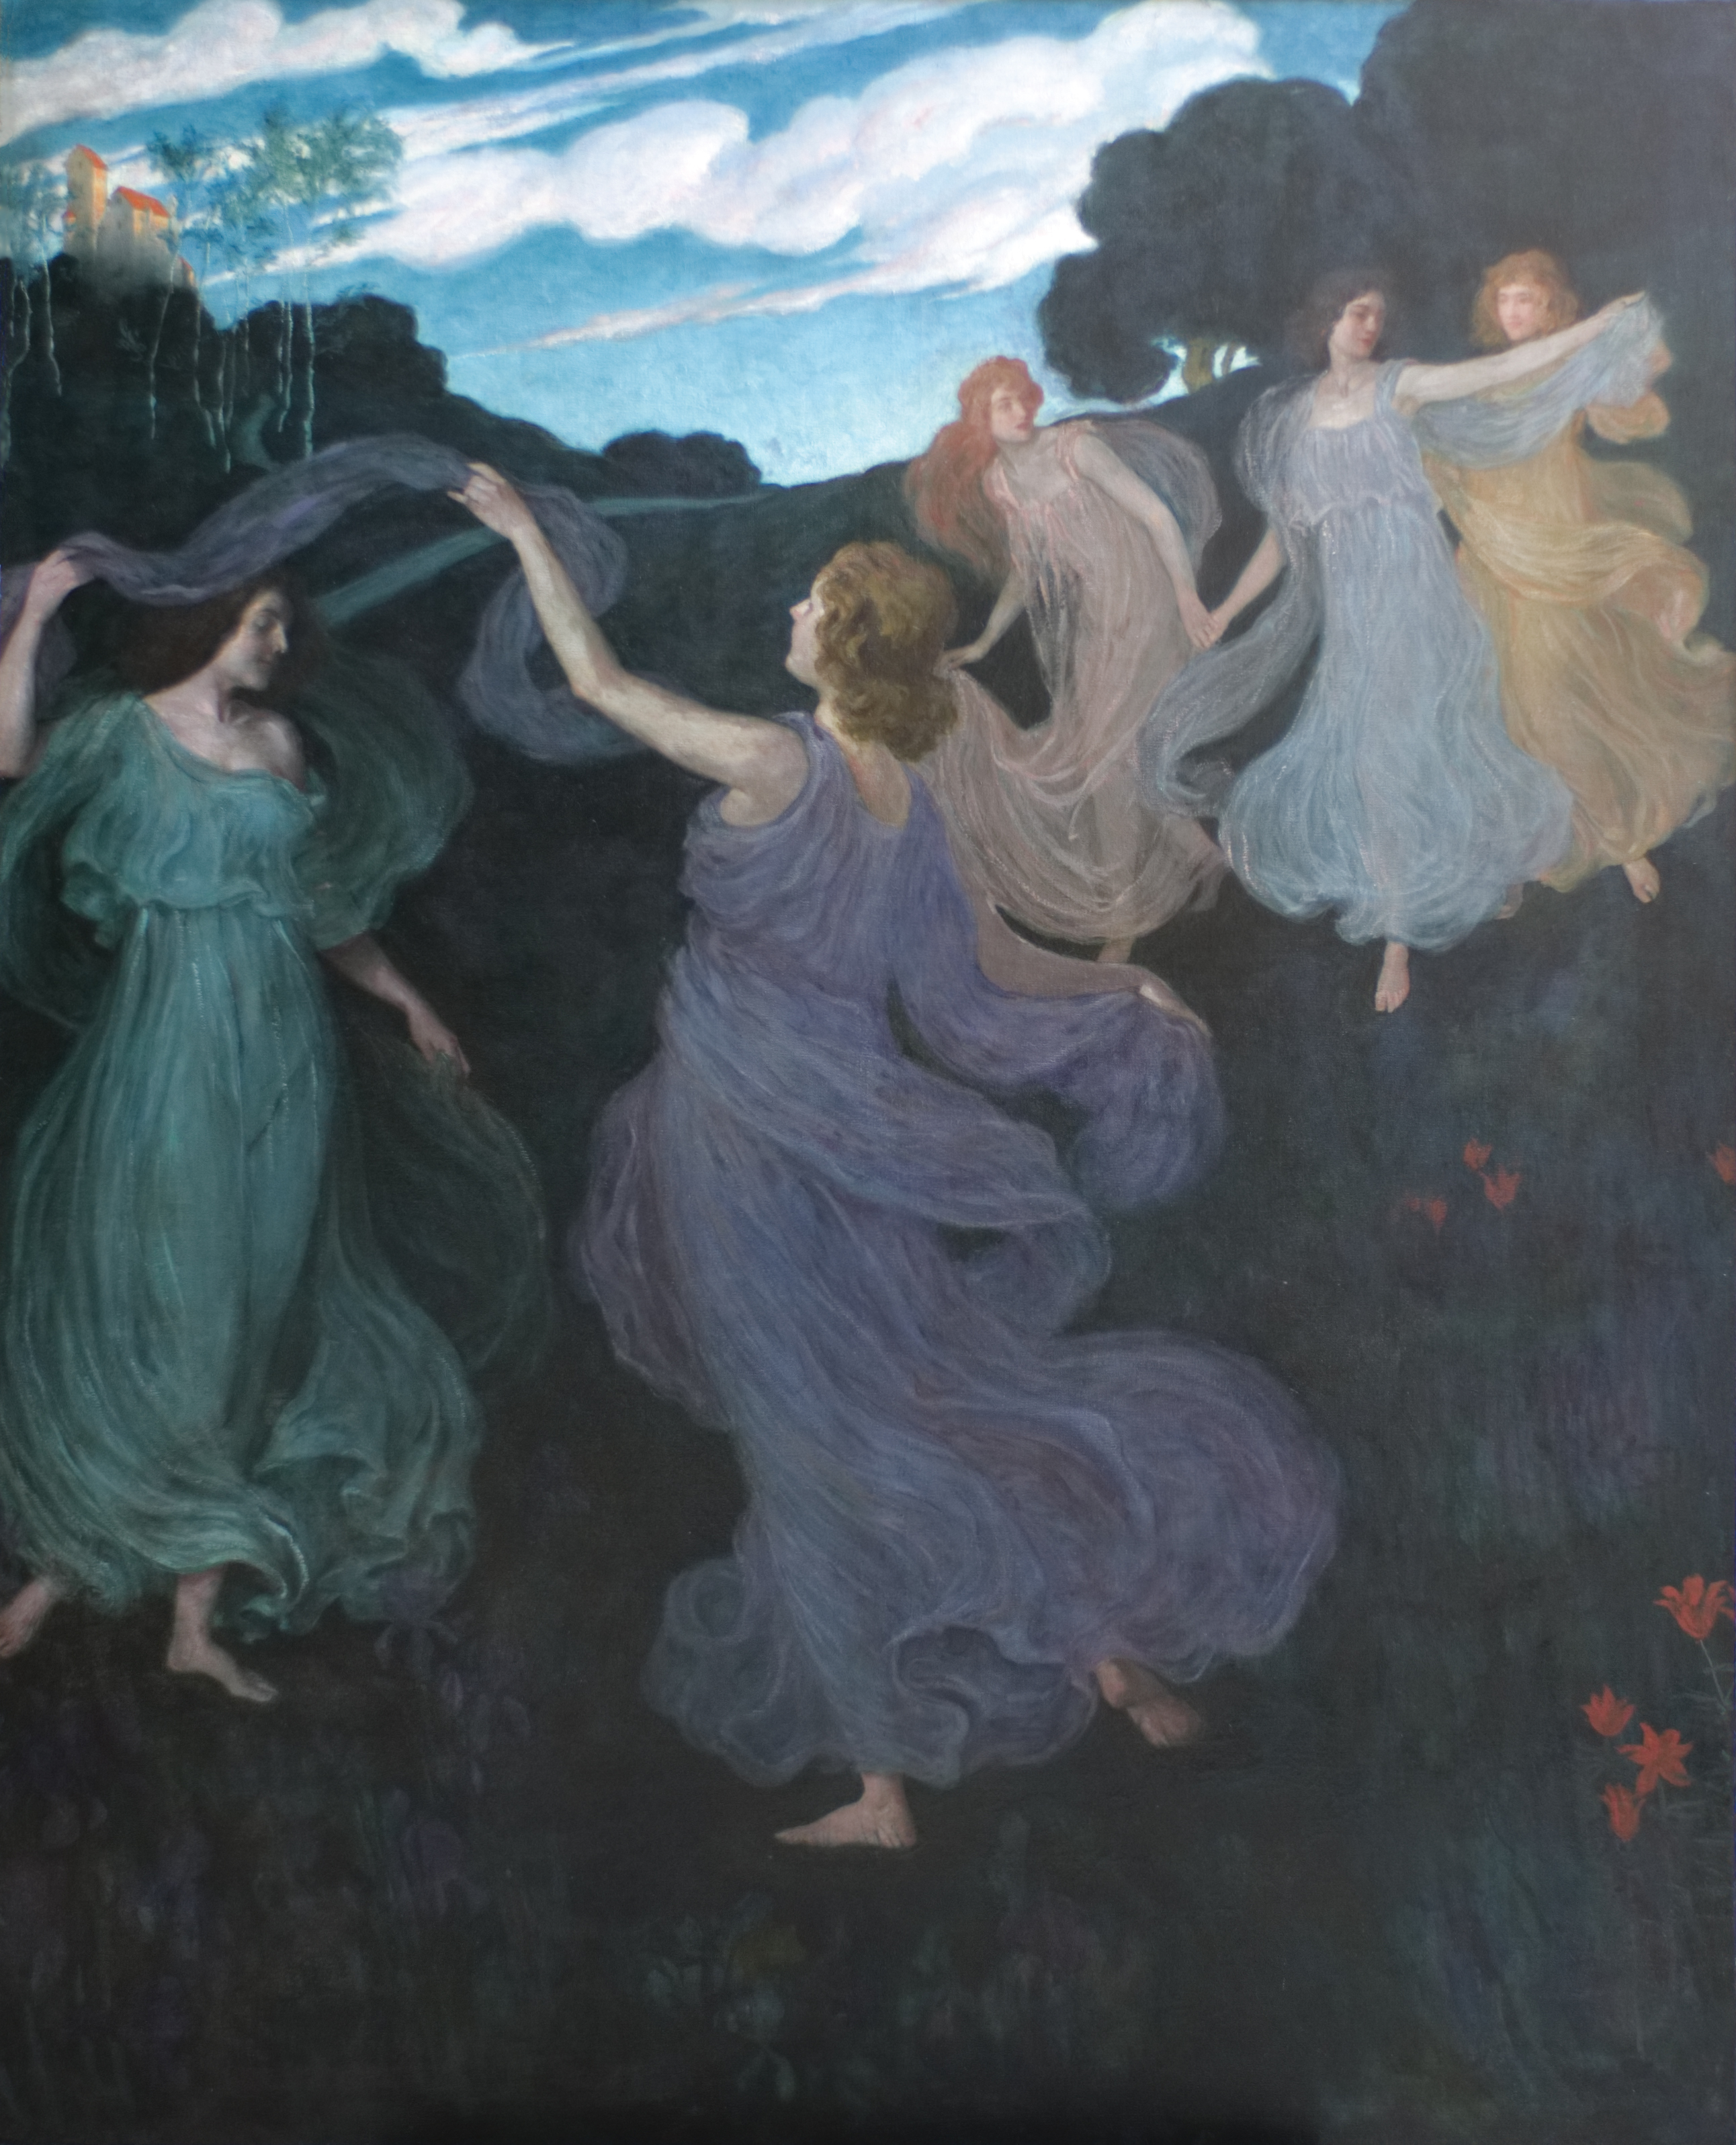 Dans van de Eleven. Voor de muziekkamer Scheid in Wenen by Josef Maria Auchentaller - 1899 Leopold Museum